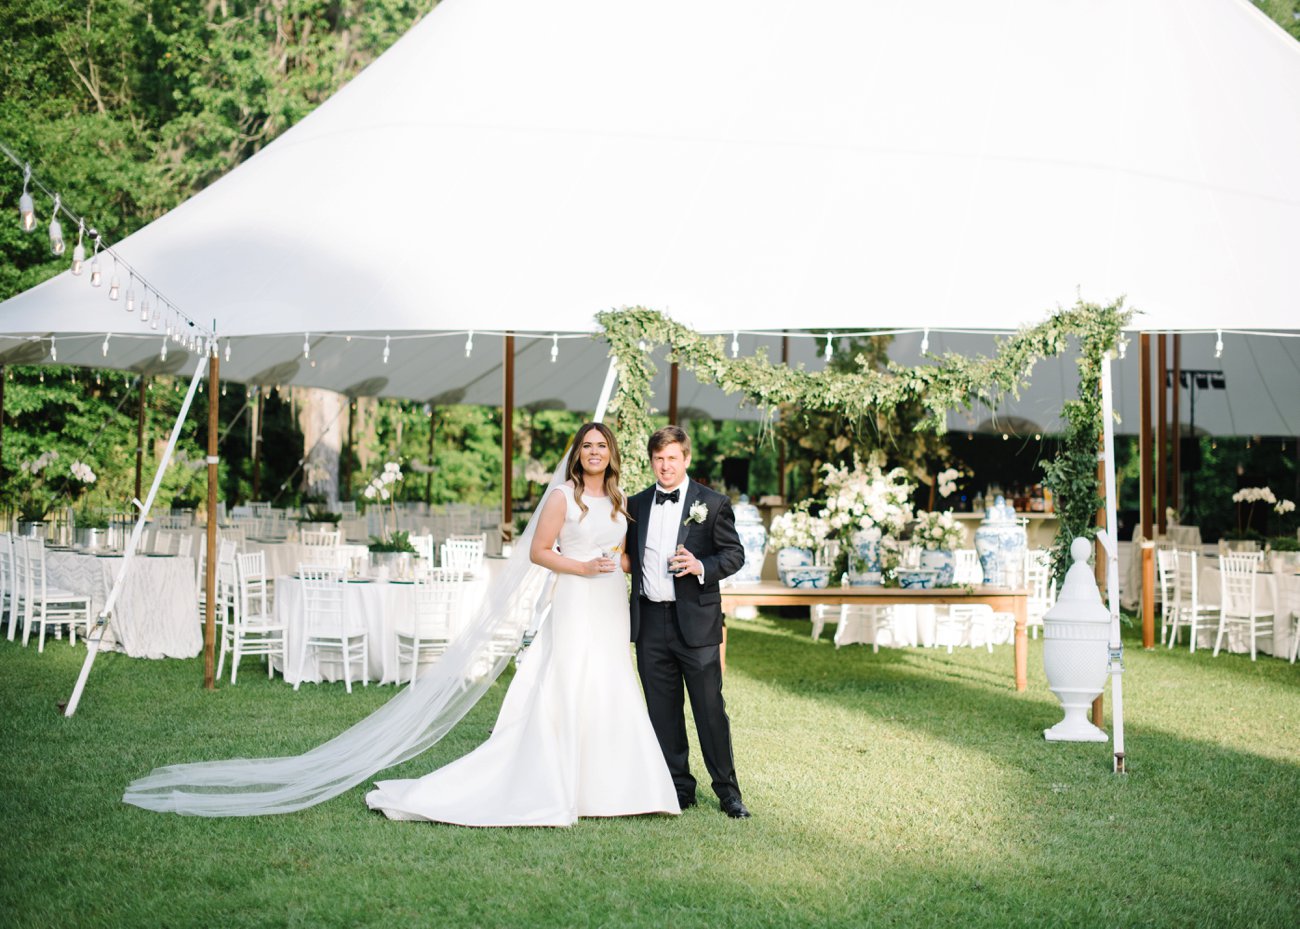 Georgia estate wedding sailcloth tent decor